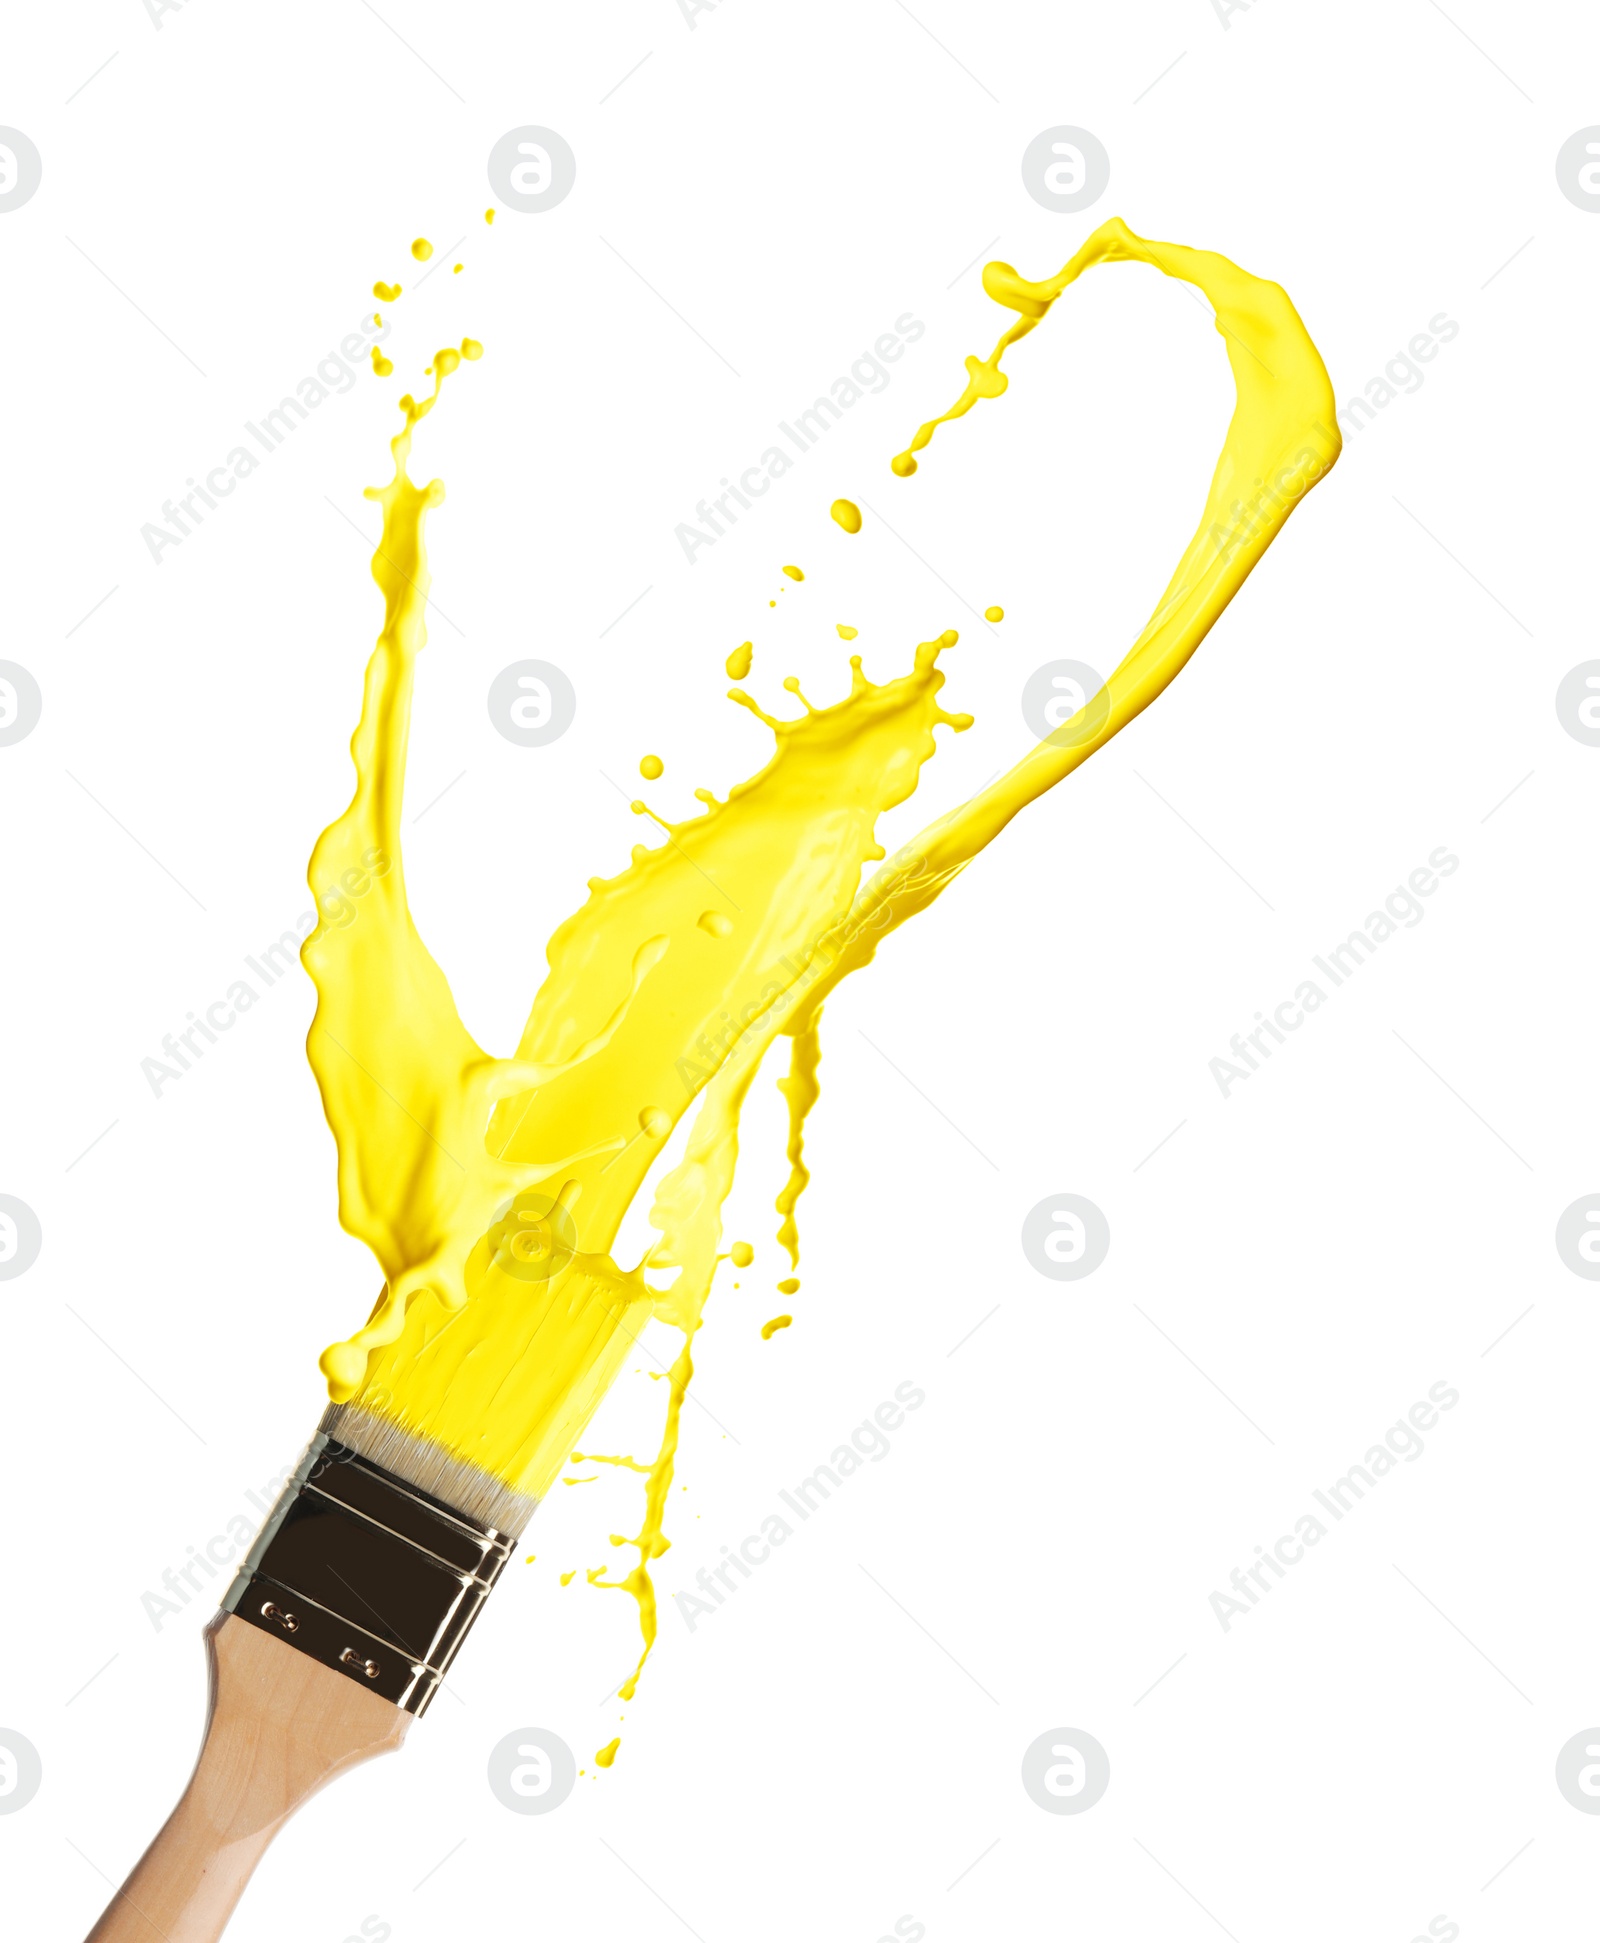 Image of Brush and splashing yellow paint on white background